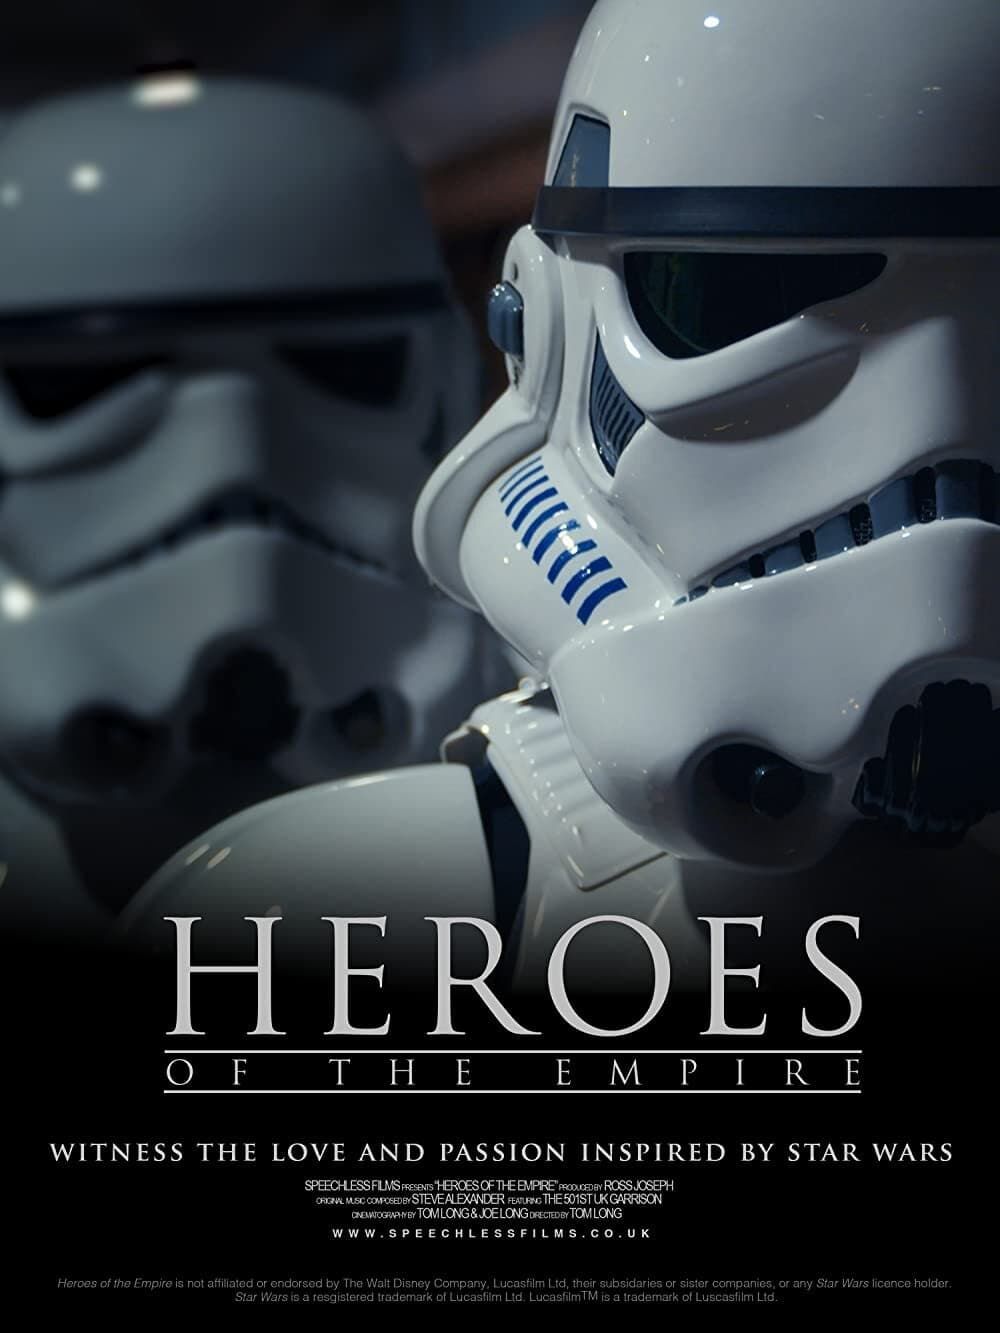 Jedi Junkies: Inside the Star Wars fan base (documentary). - SFcrowsnest